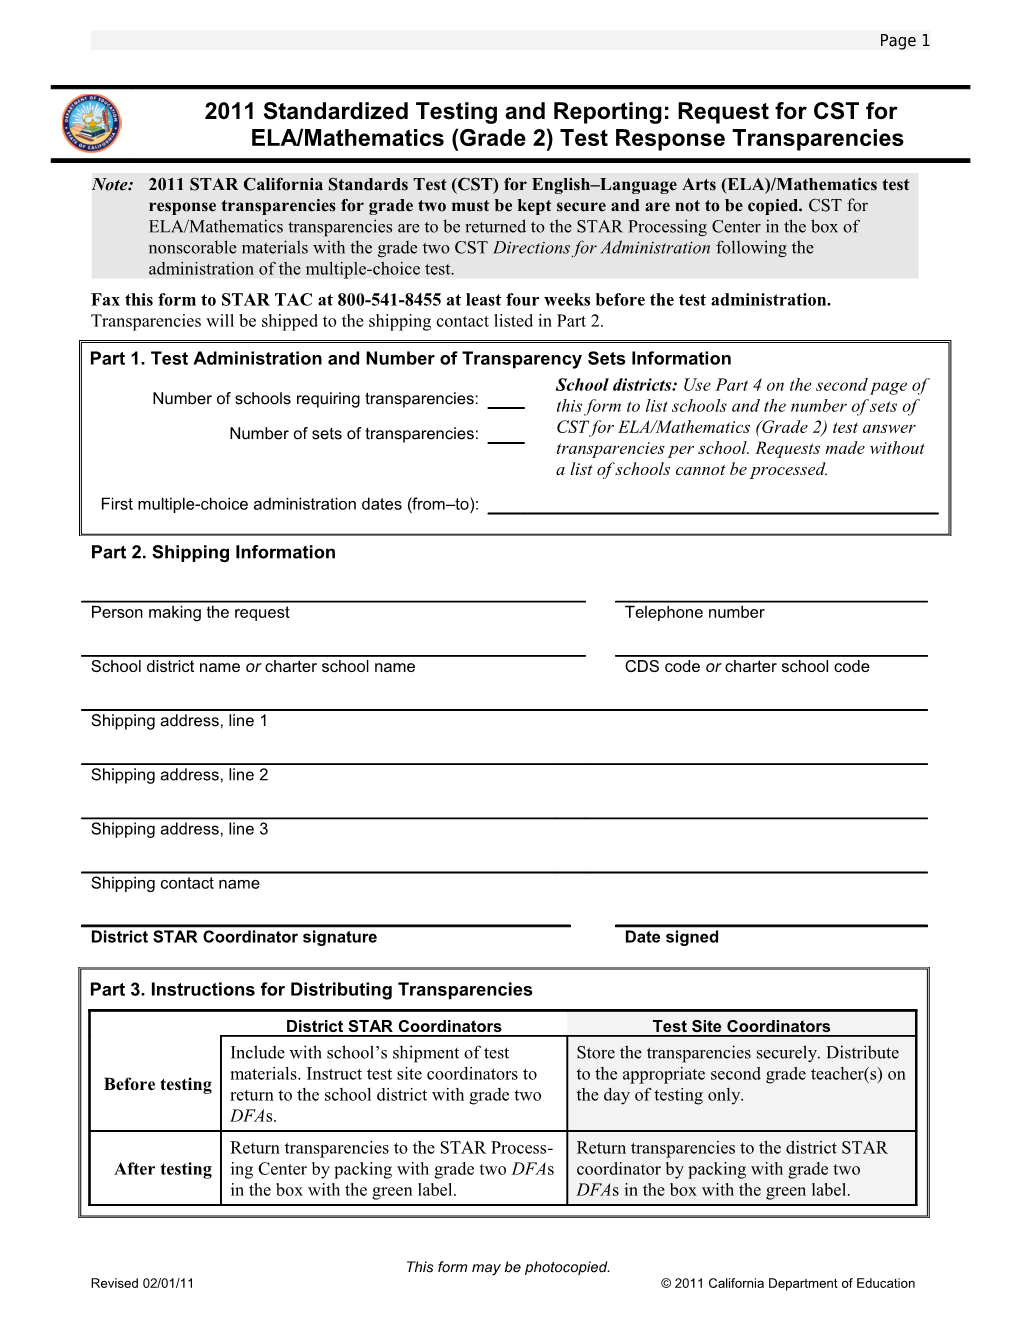 CST Grade 2 ELA/Mathematics Transparencies Request Form